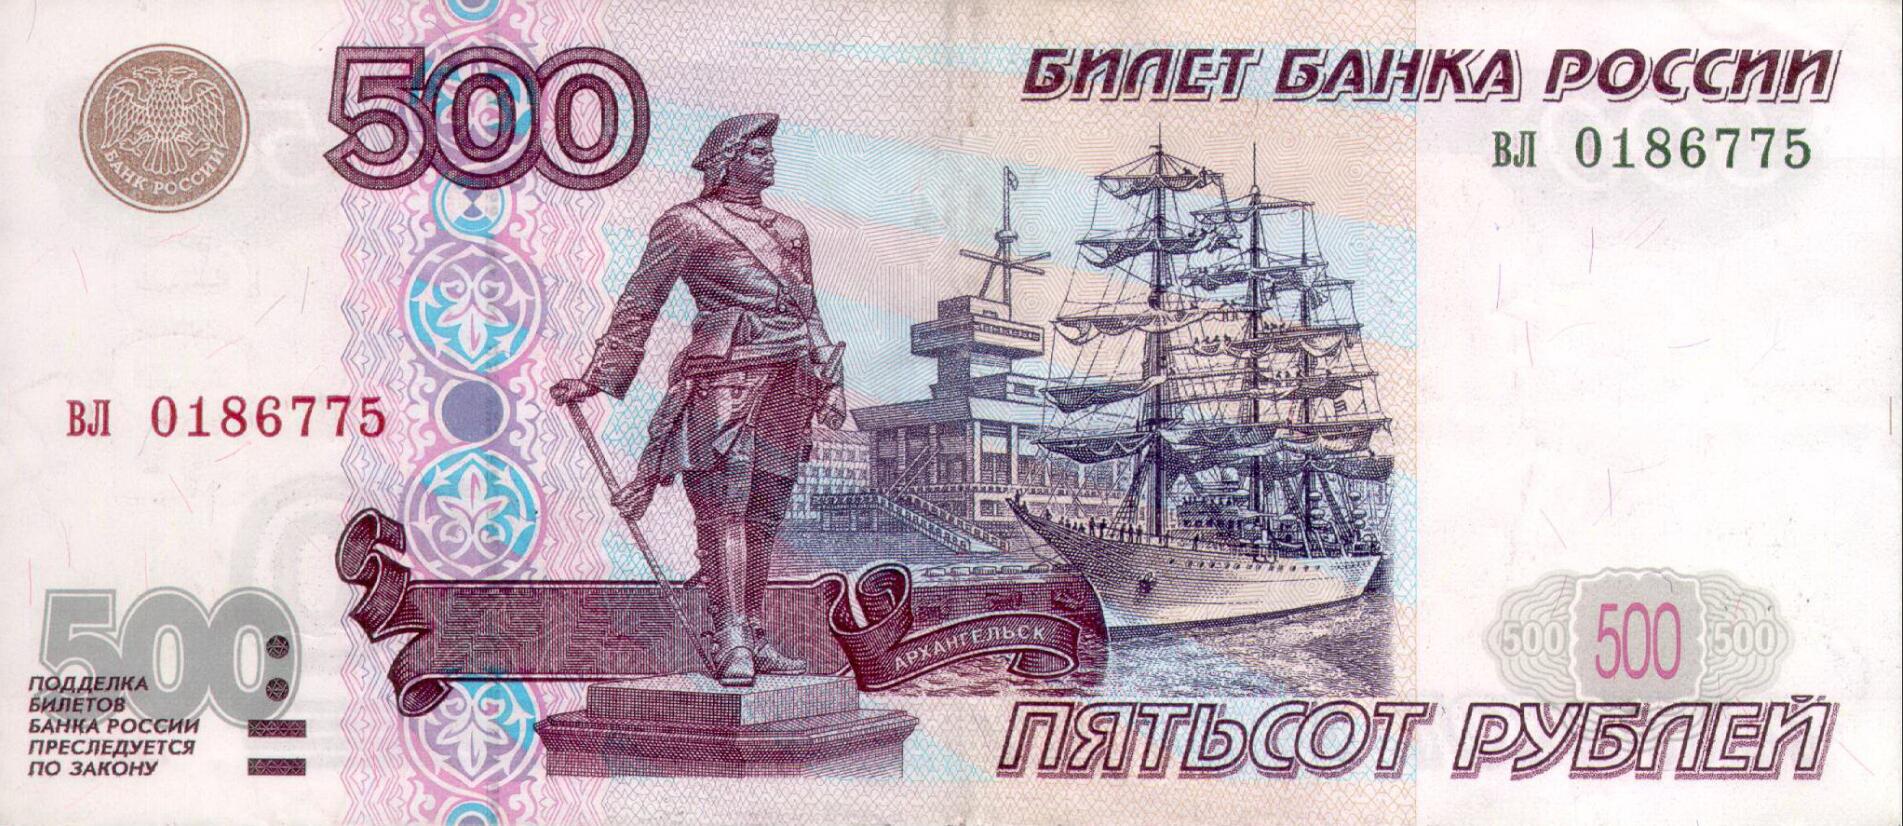 Russia 500 ruble bill